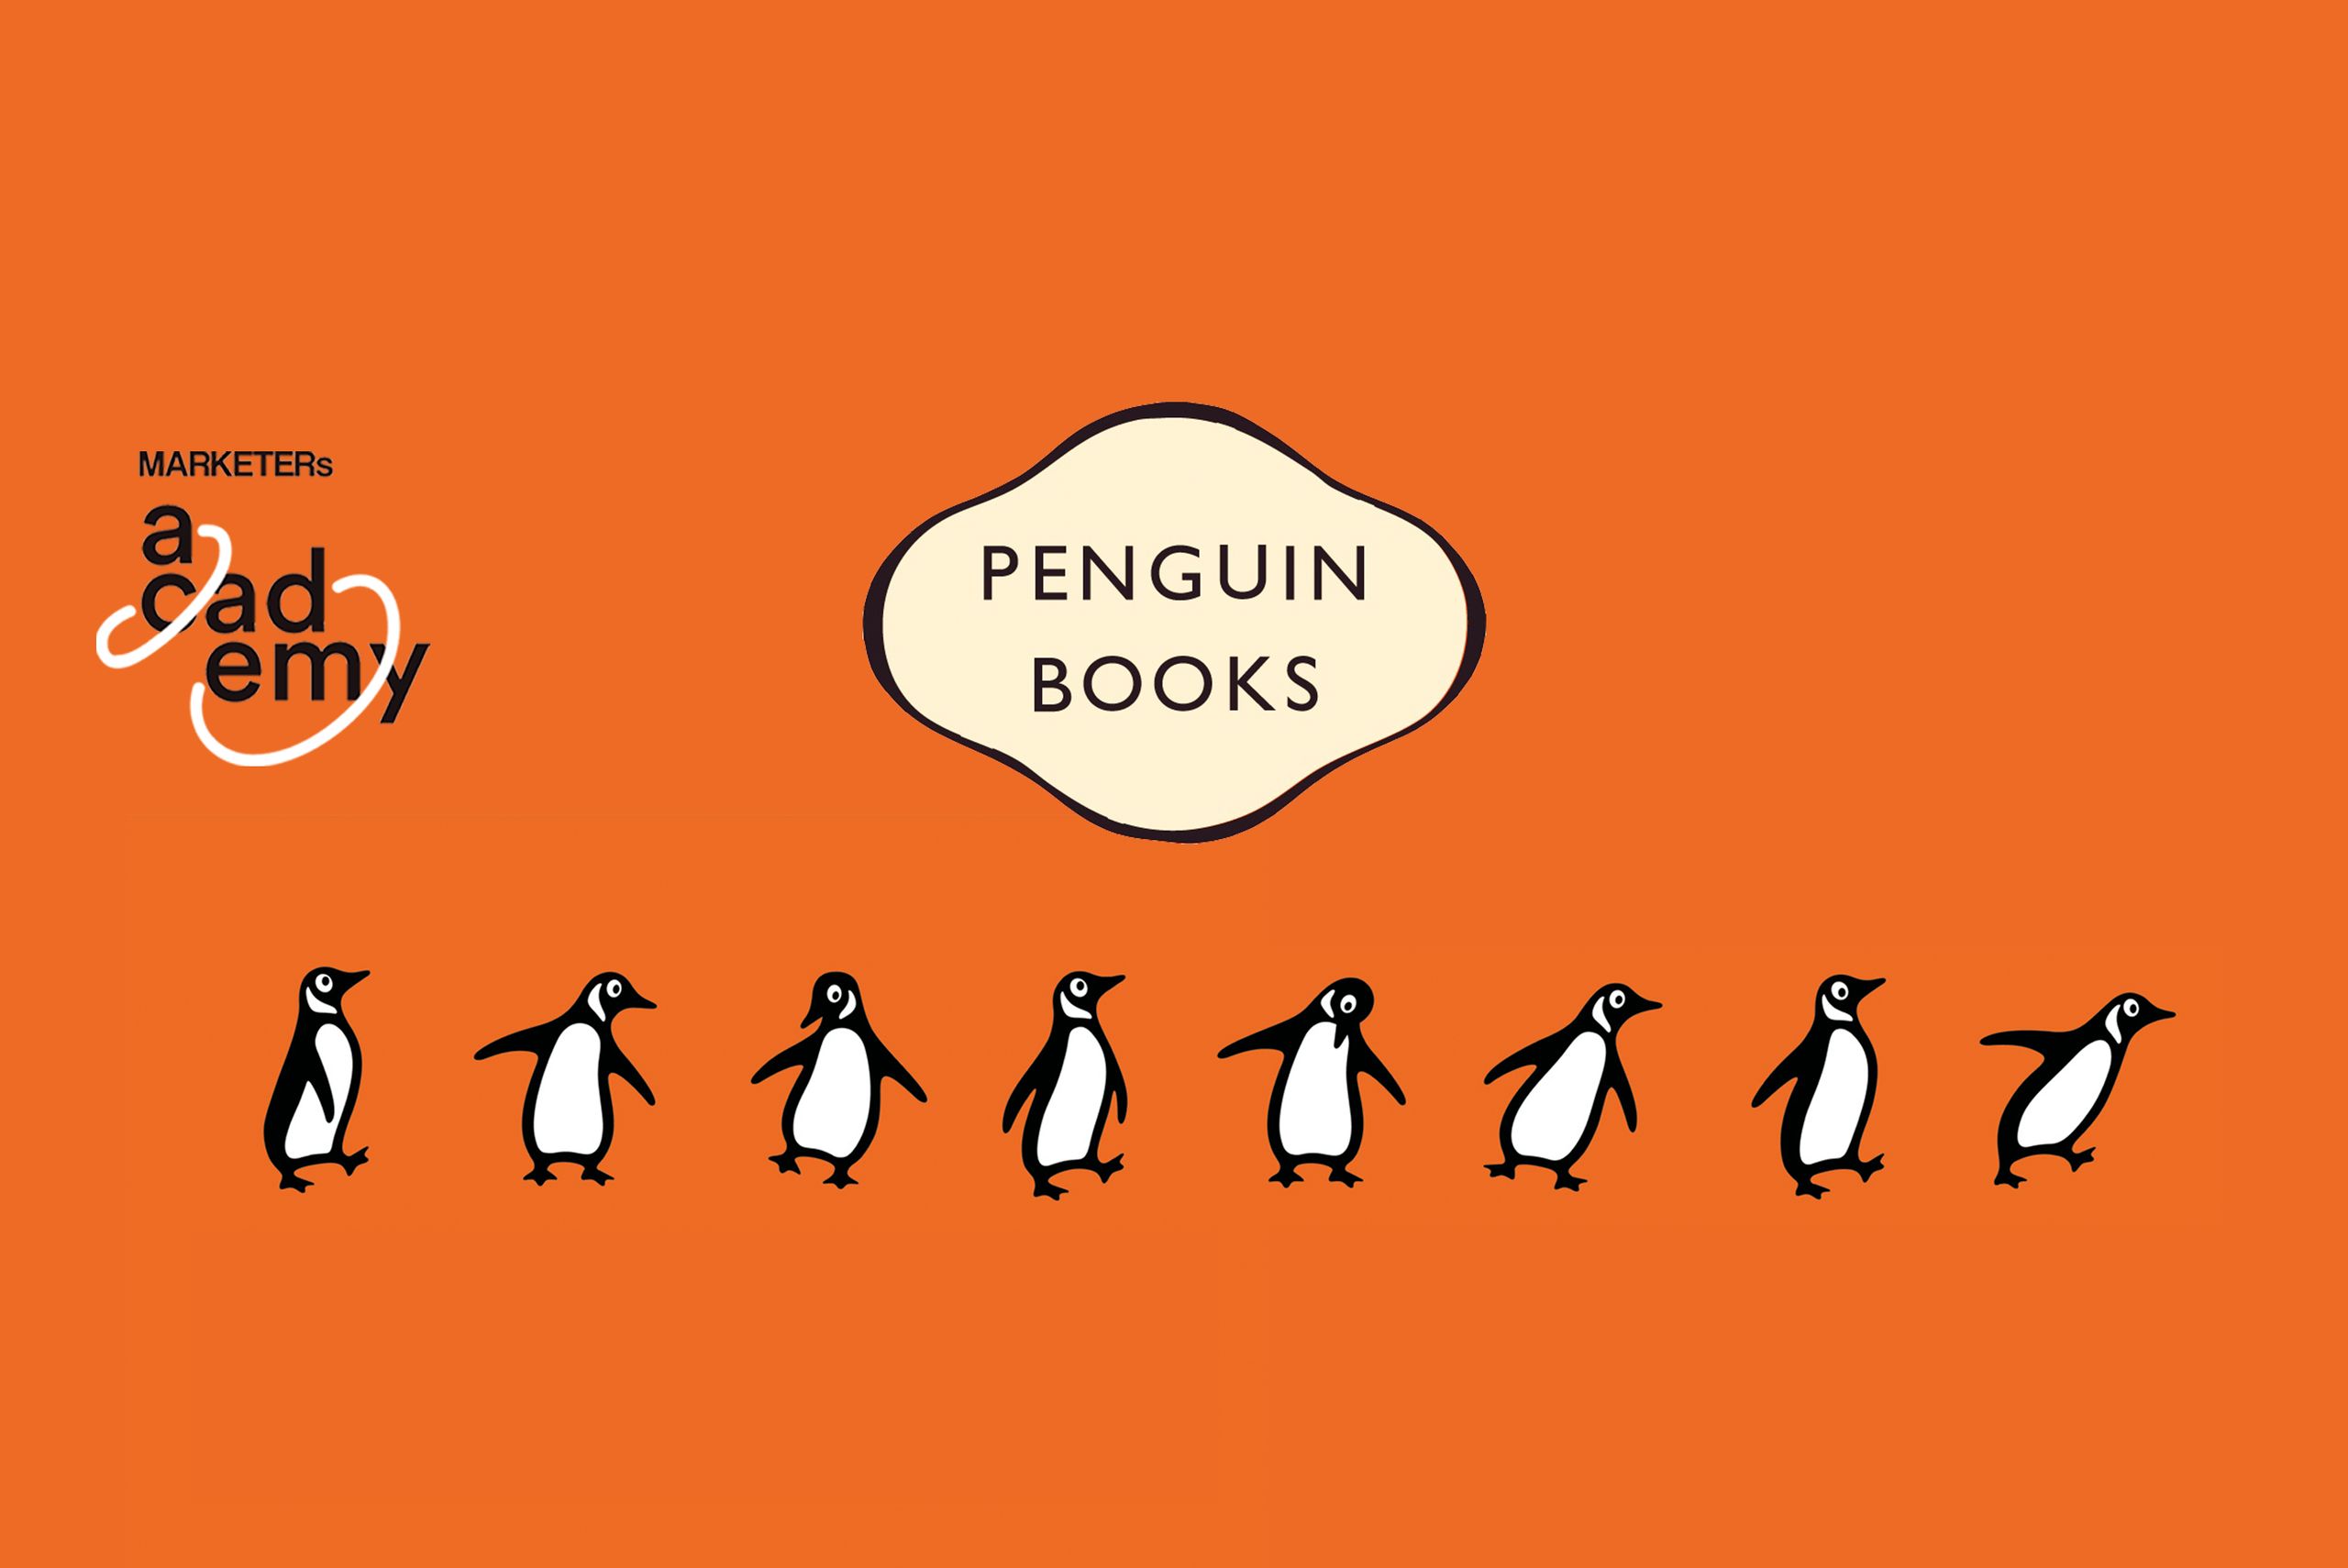 Il caso delle copertine Penguin Books: fonte: marketersclub.it
Nella creazione di una strategia pub…